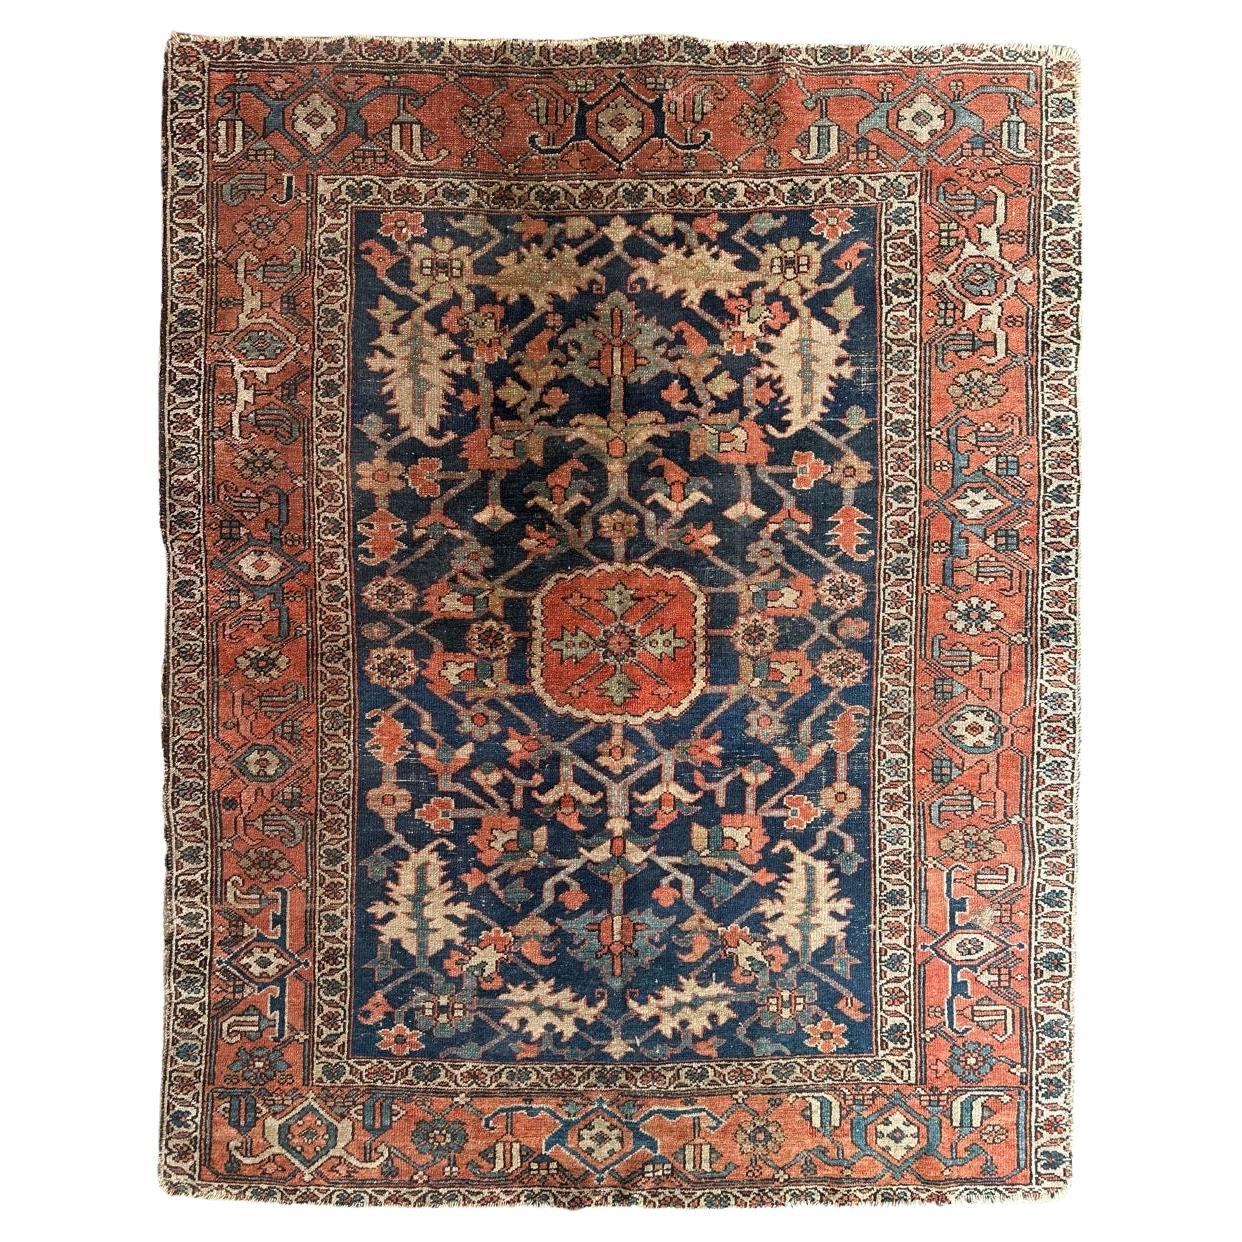 Wonderful antique square Heriz rug